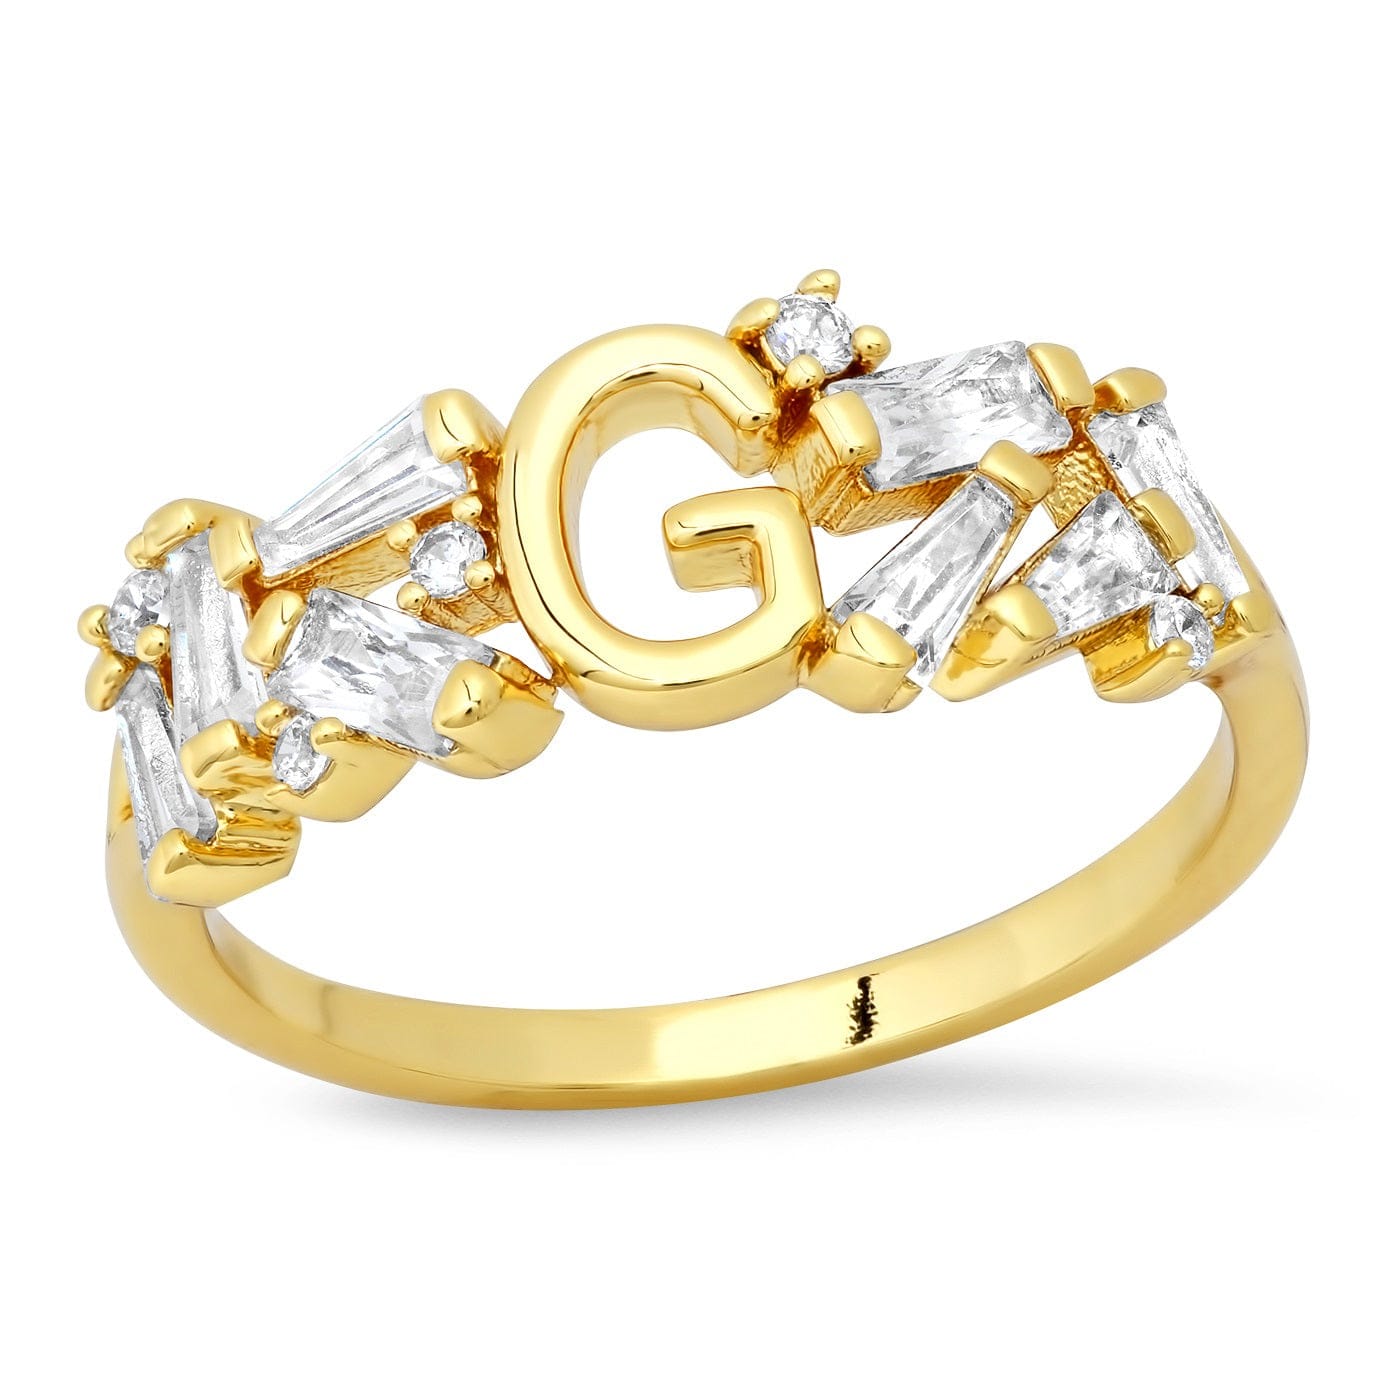 TAI JEWELRY Rings 6 / G Baguette Initial Ring